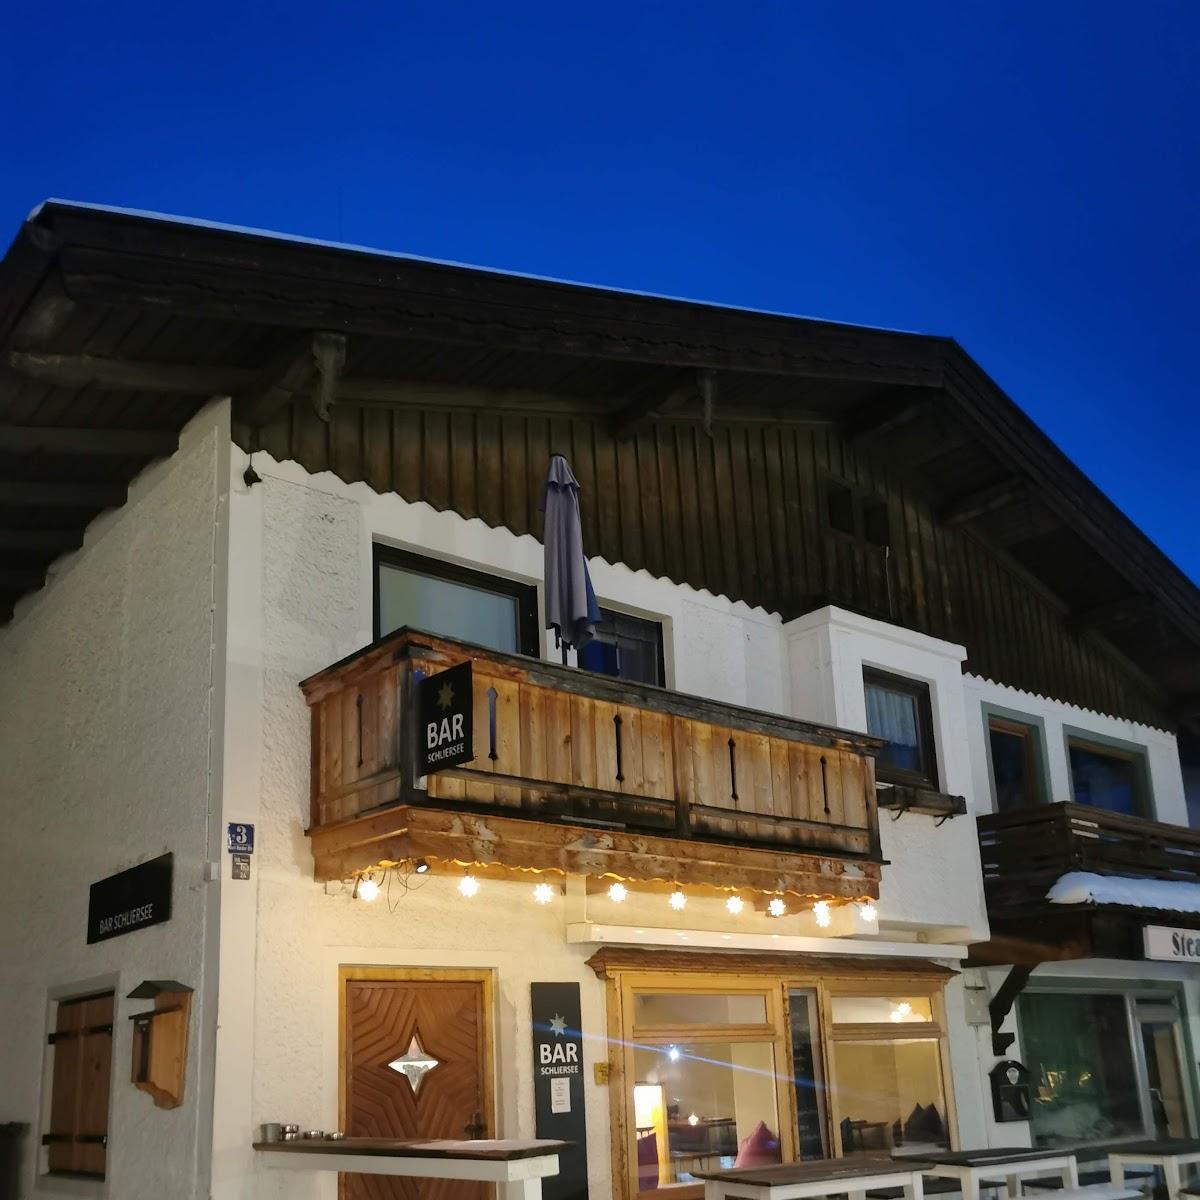 Restaurant "Bar" in Schliersee